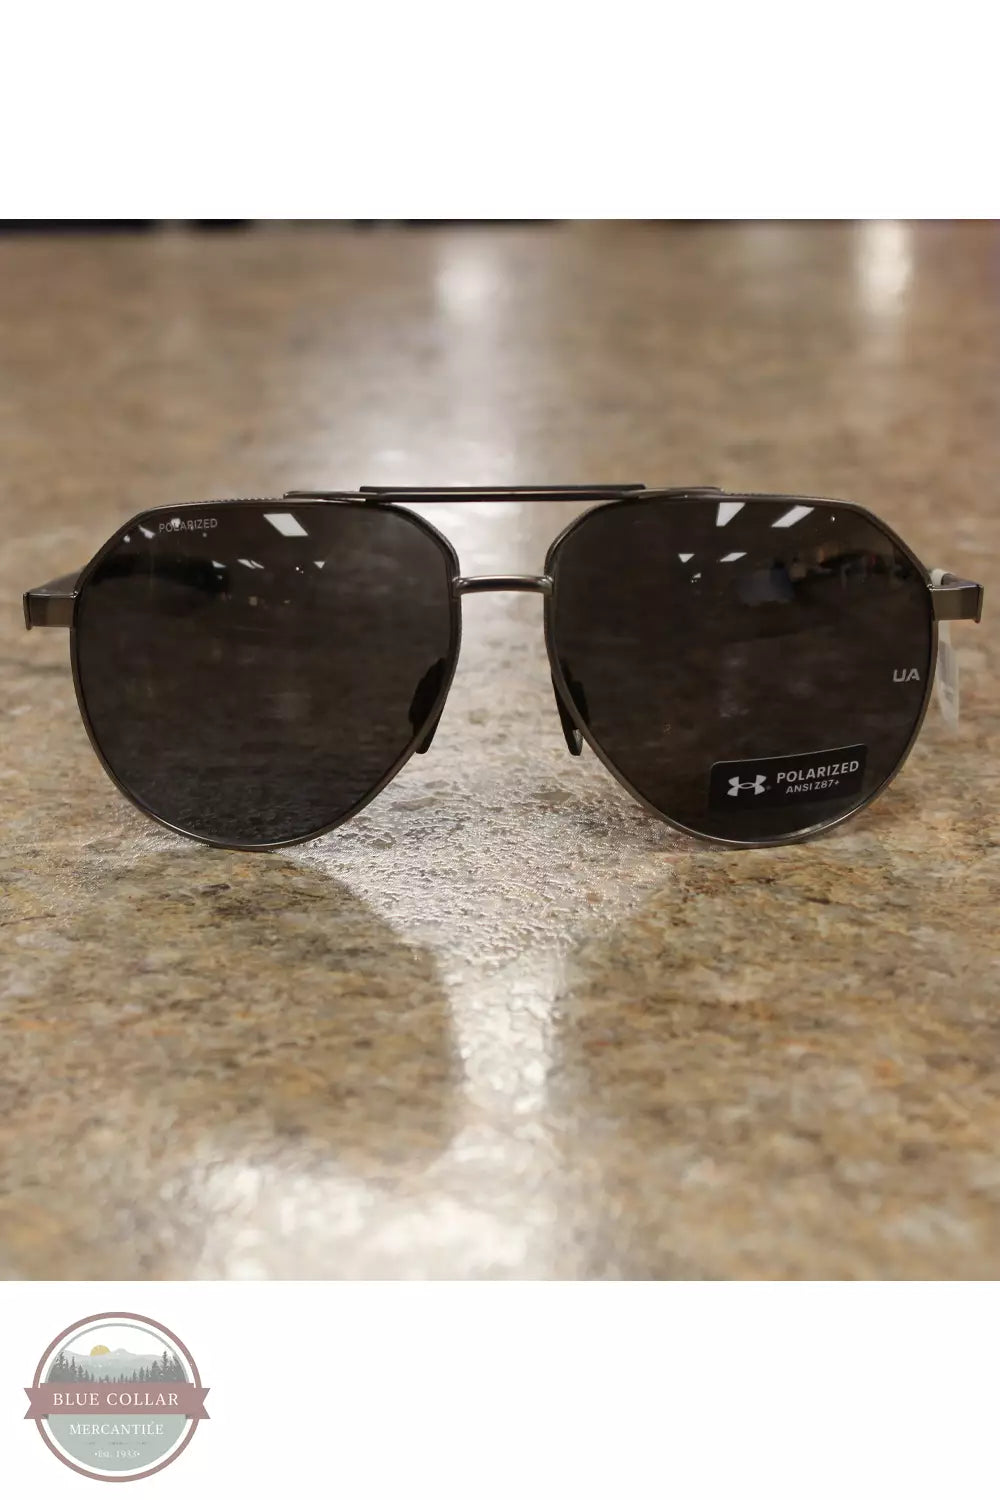 Under Armour 1385110-947 Honcho Polarized Sunglasses in Matte Dark Ruthenium / Palladium Front View